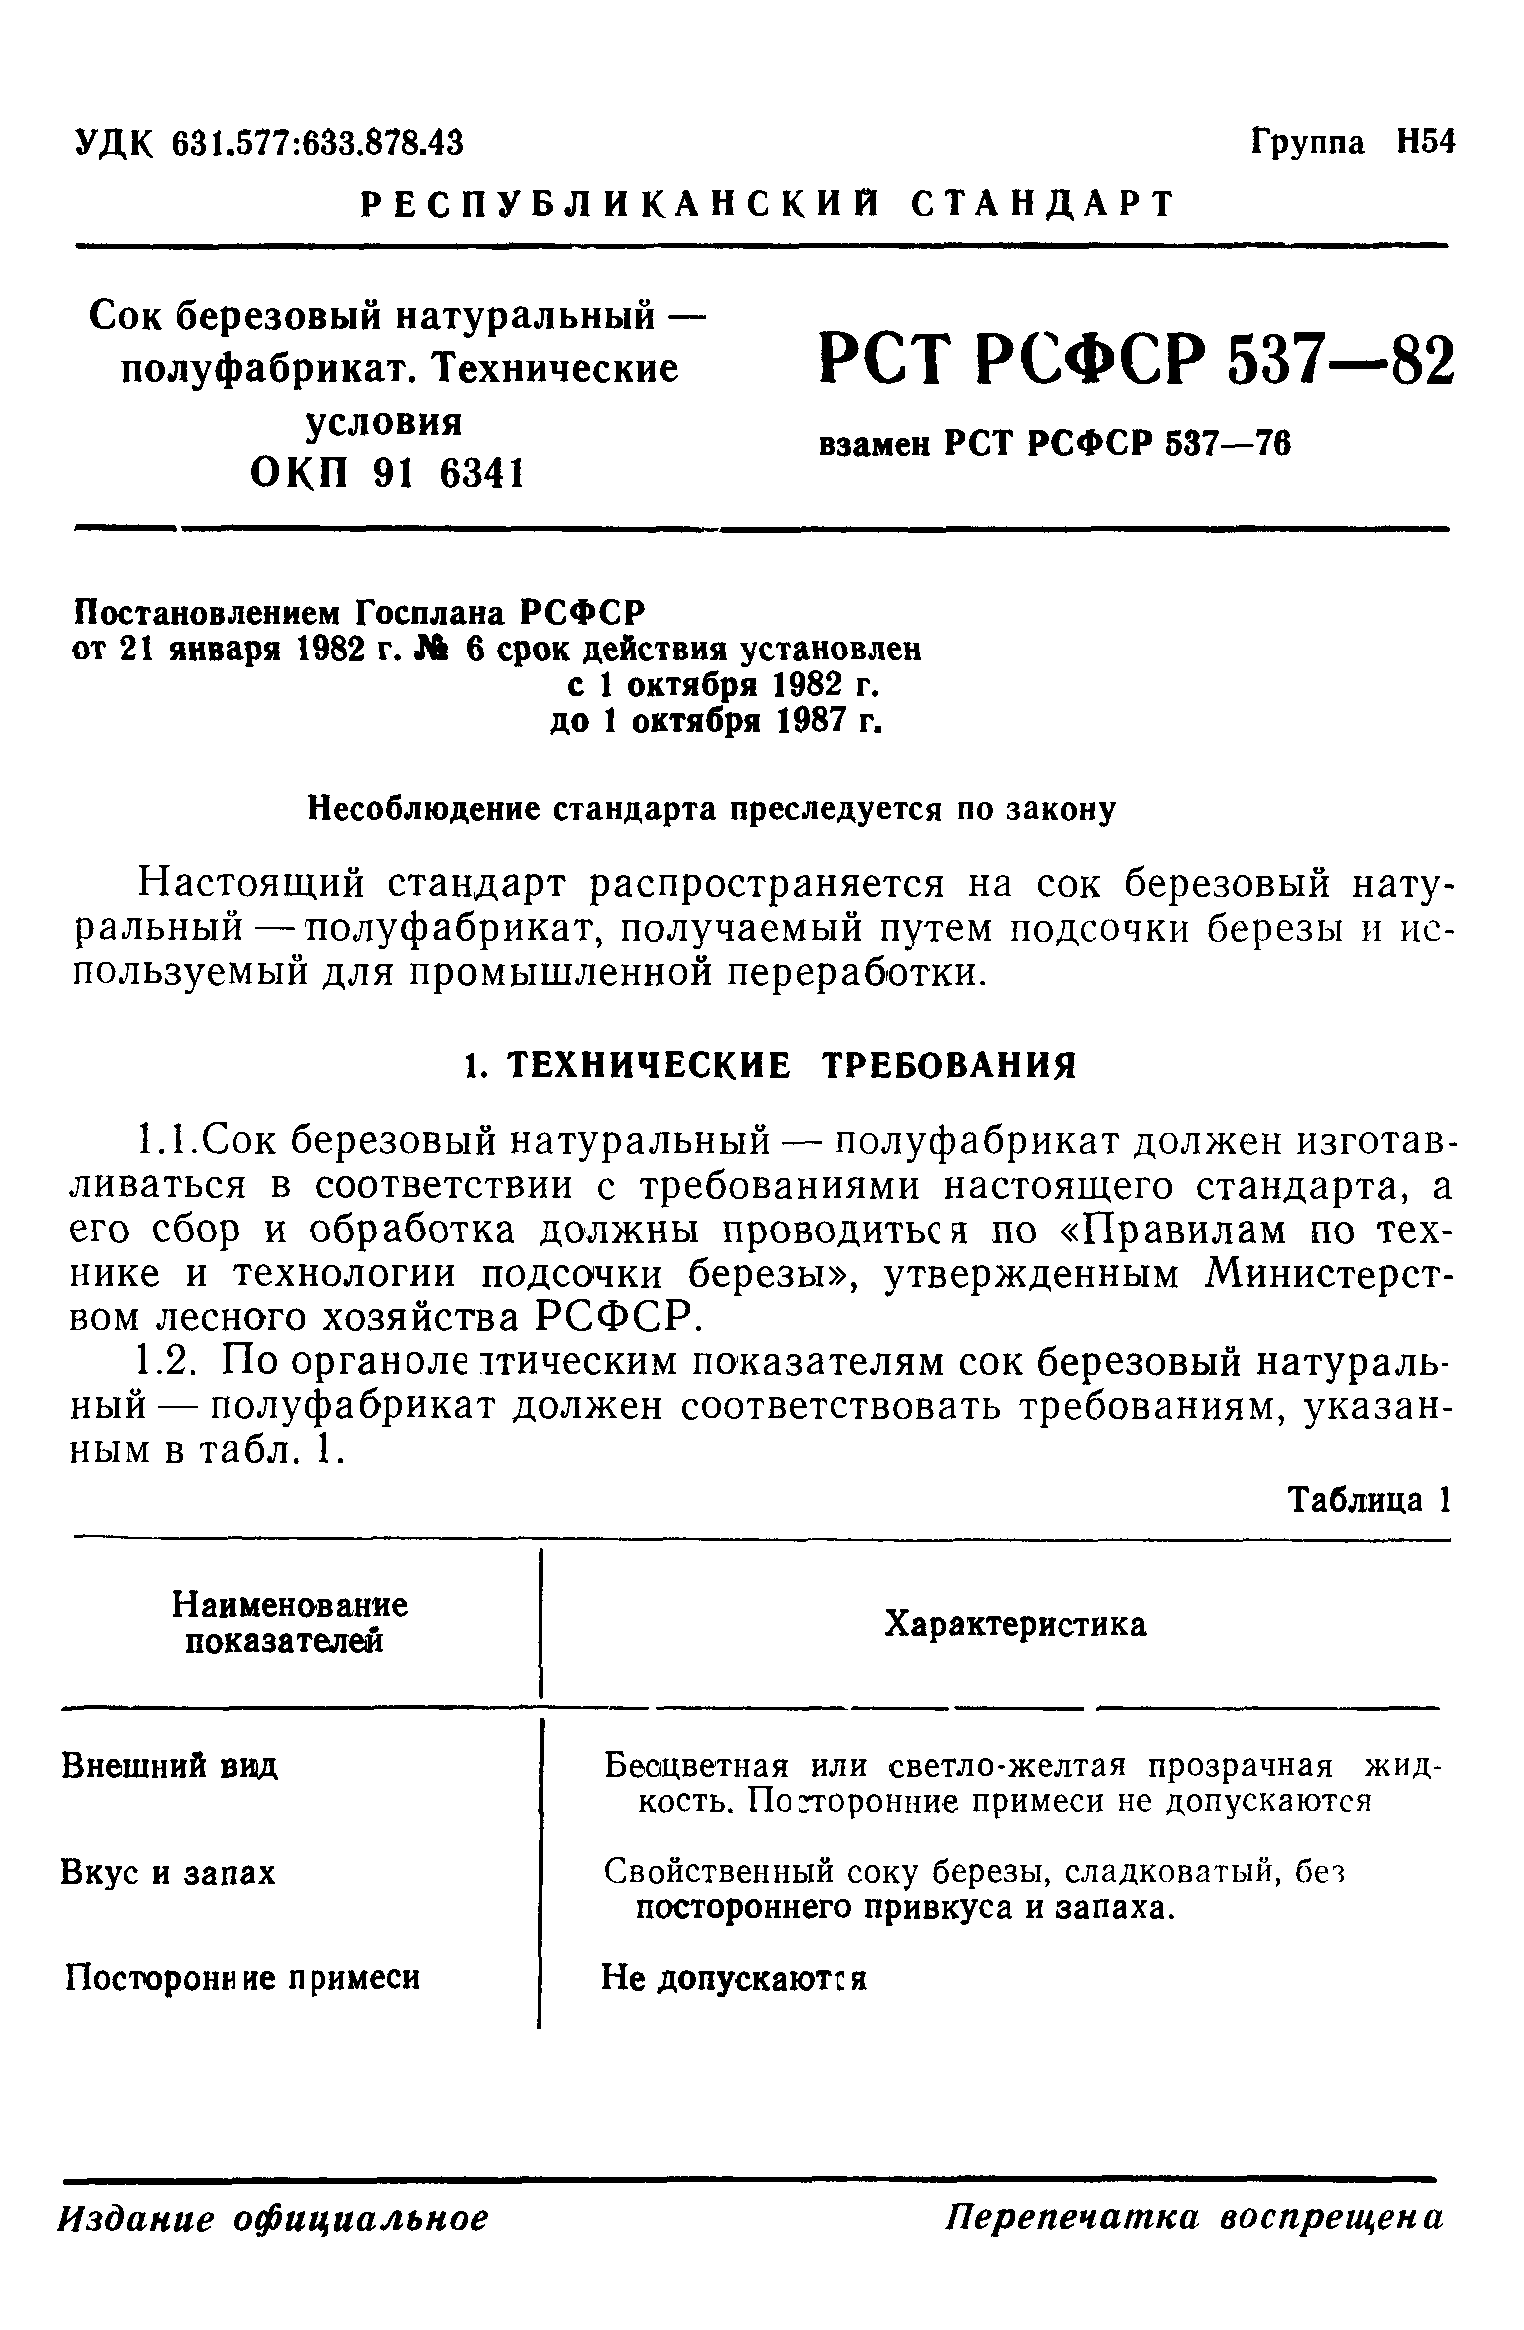 РСТ РСФСР 537-82